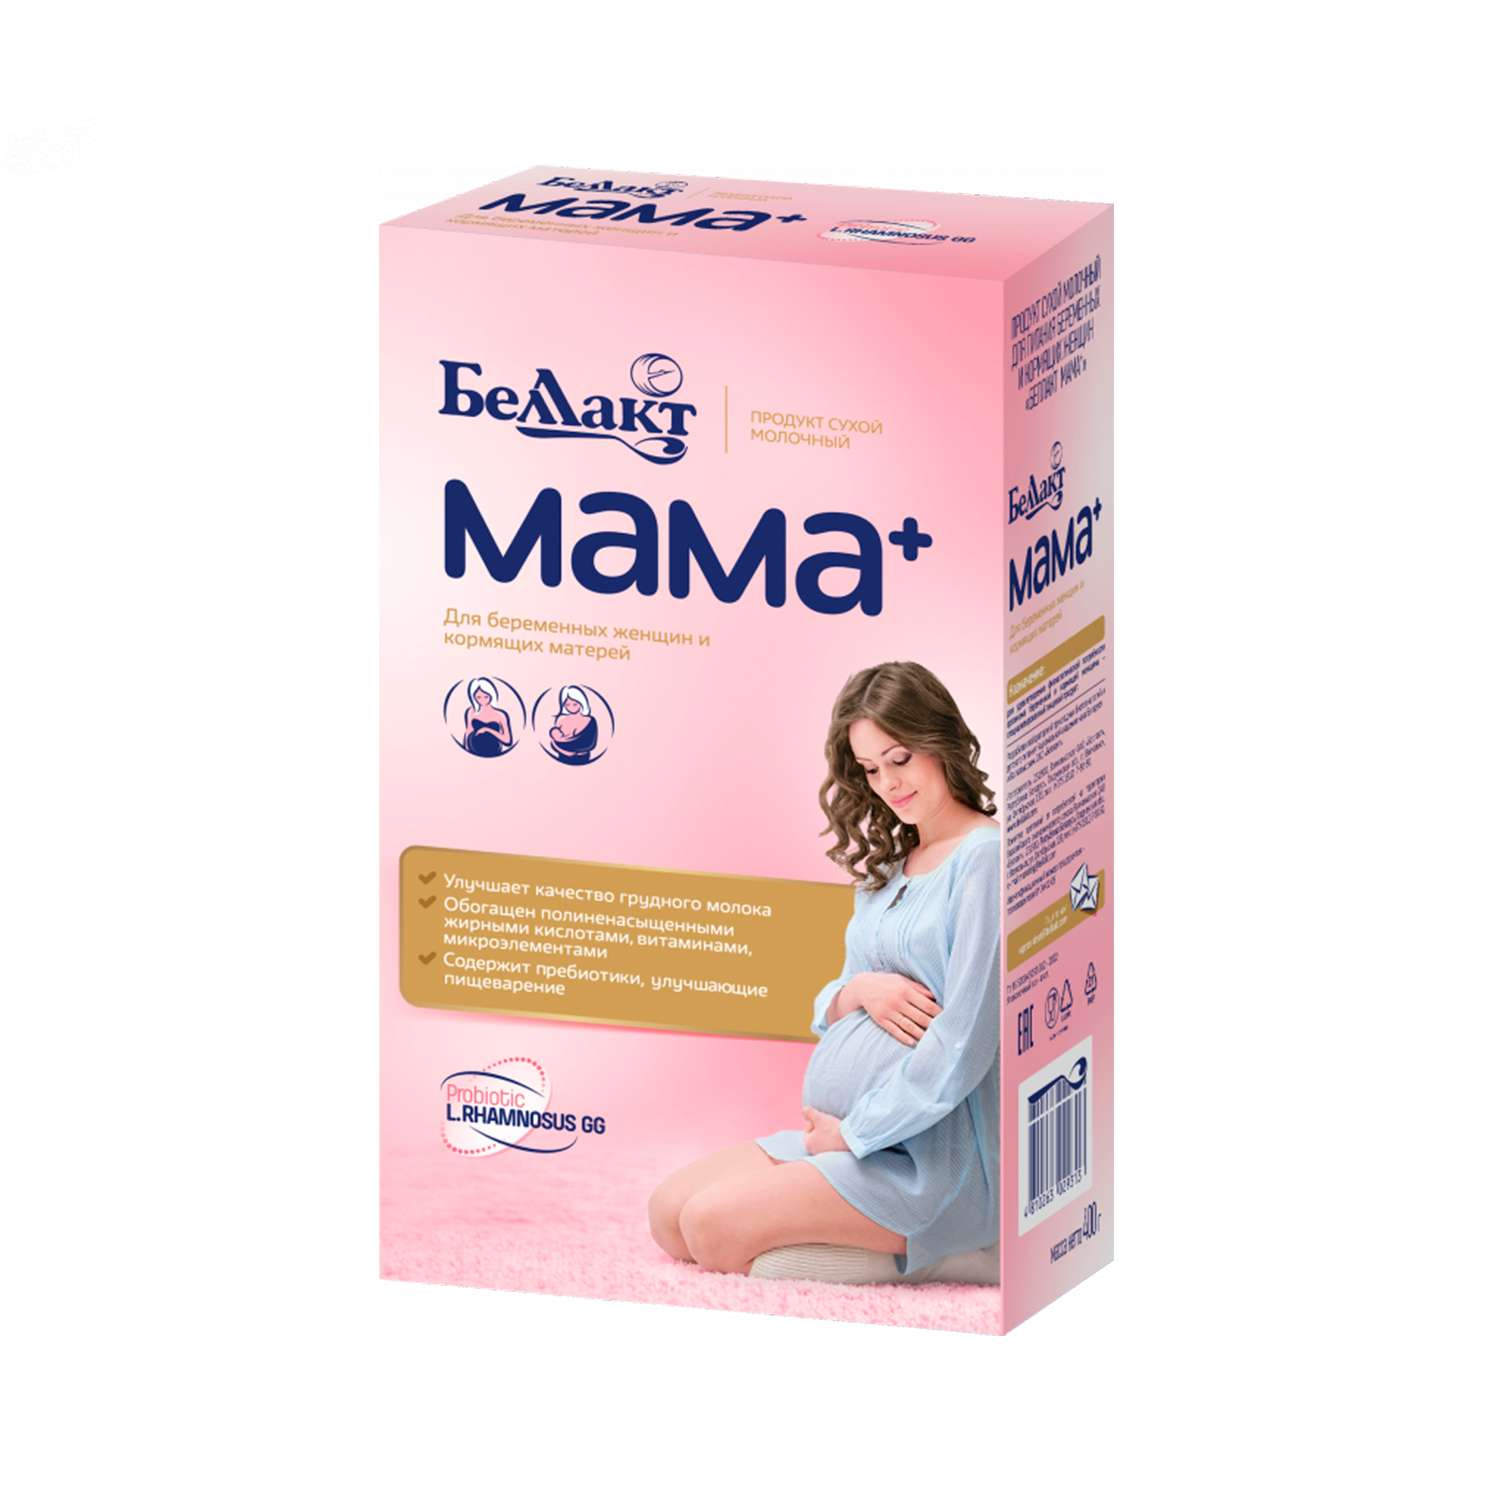 Продукт молочный Беллакт Мама+ для беременных и кормящих женщин 400г - фото 1